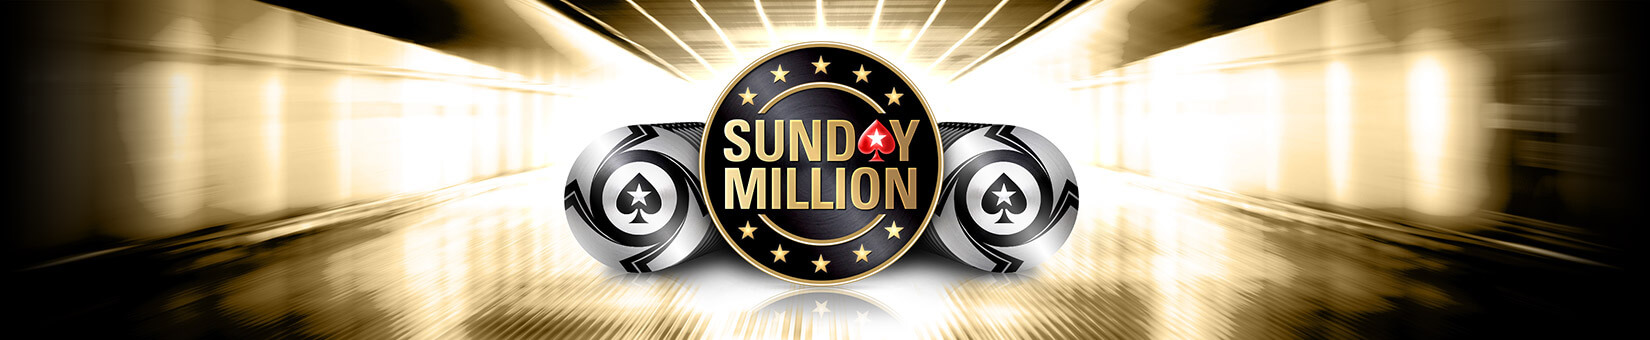 Sunday-Million